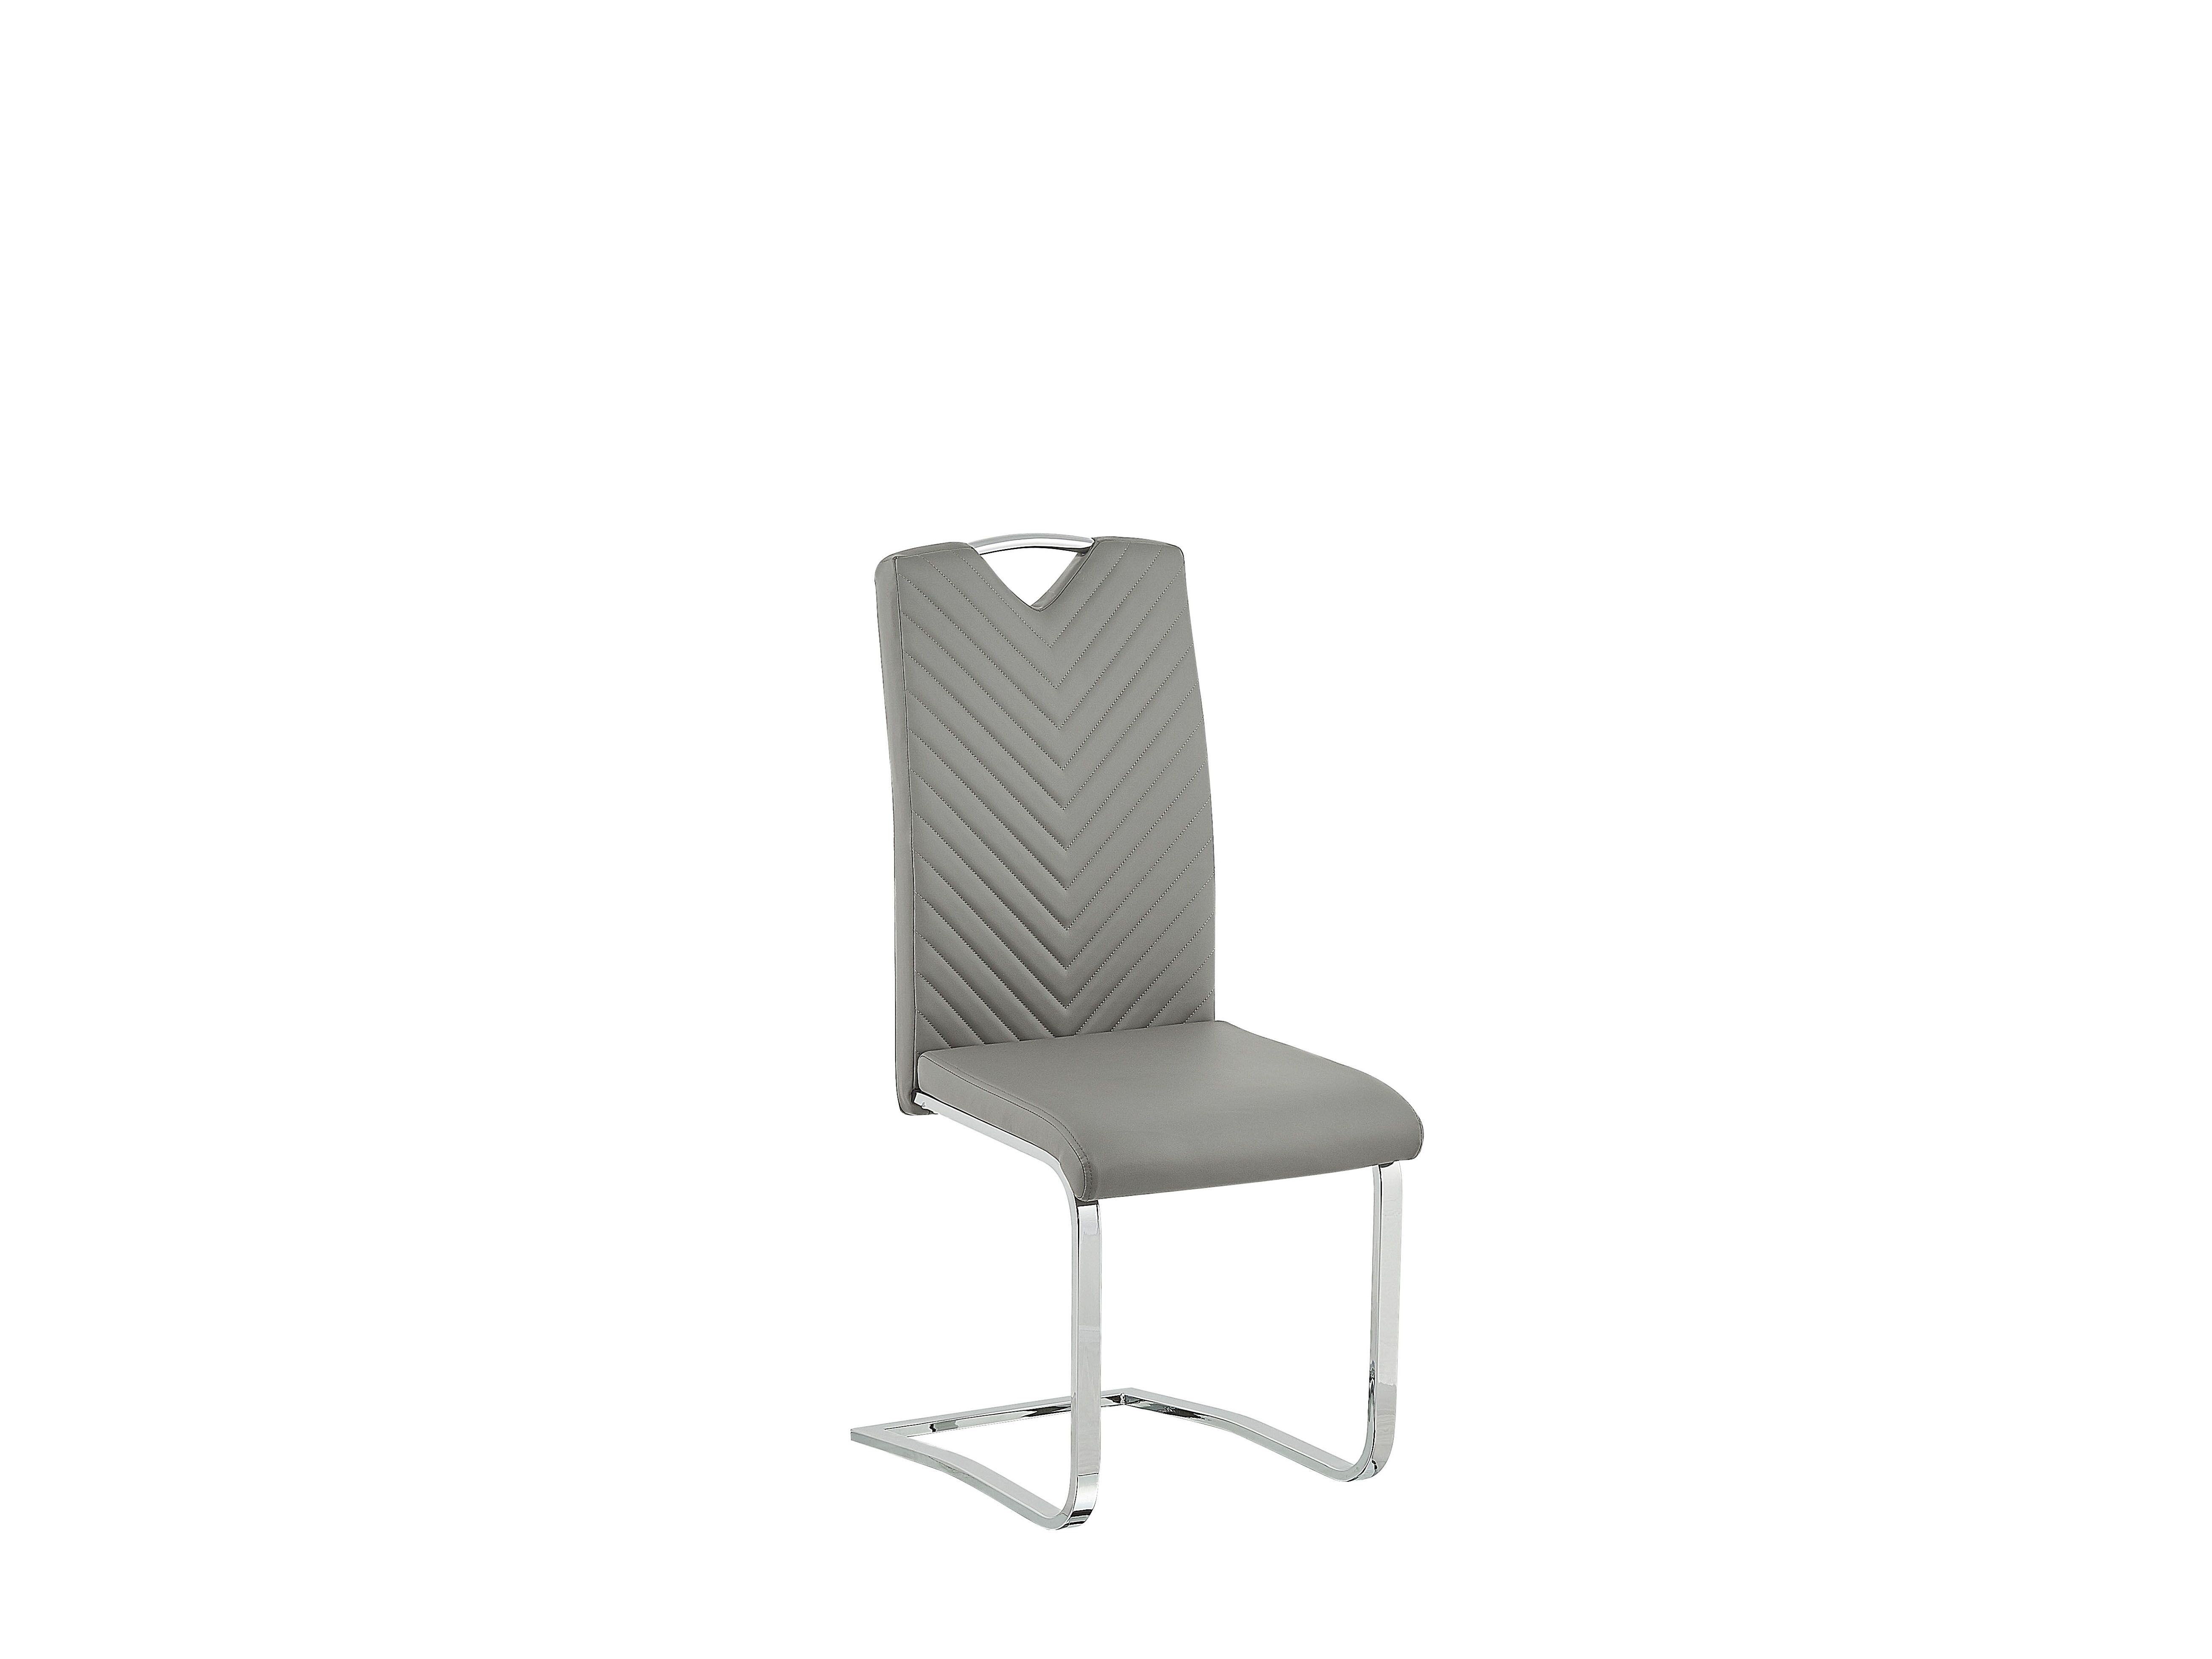 Set 2 ks. jídelních židlí PINACCO (šedá)